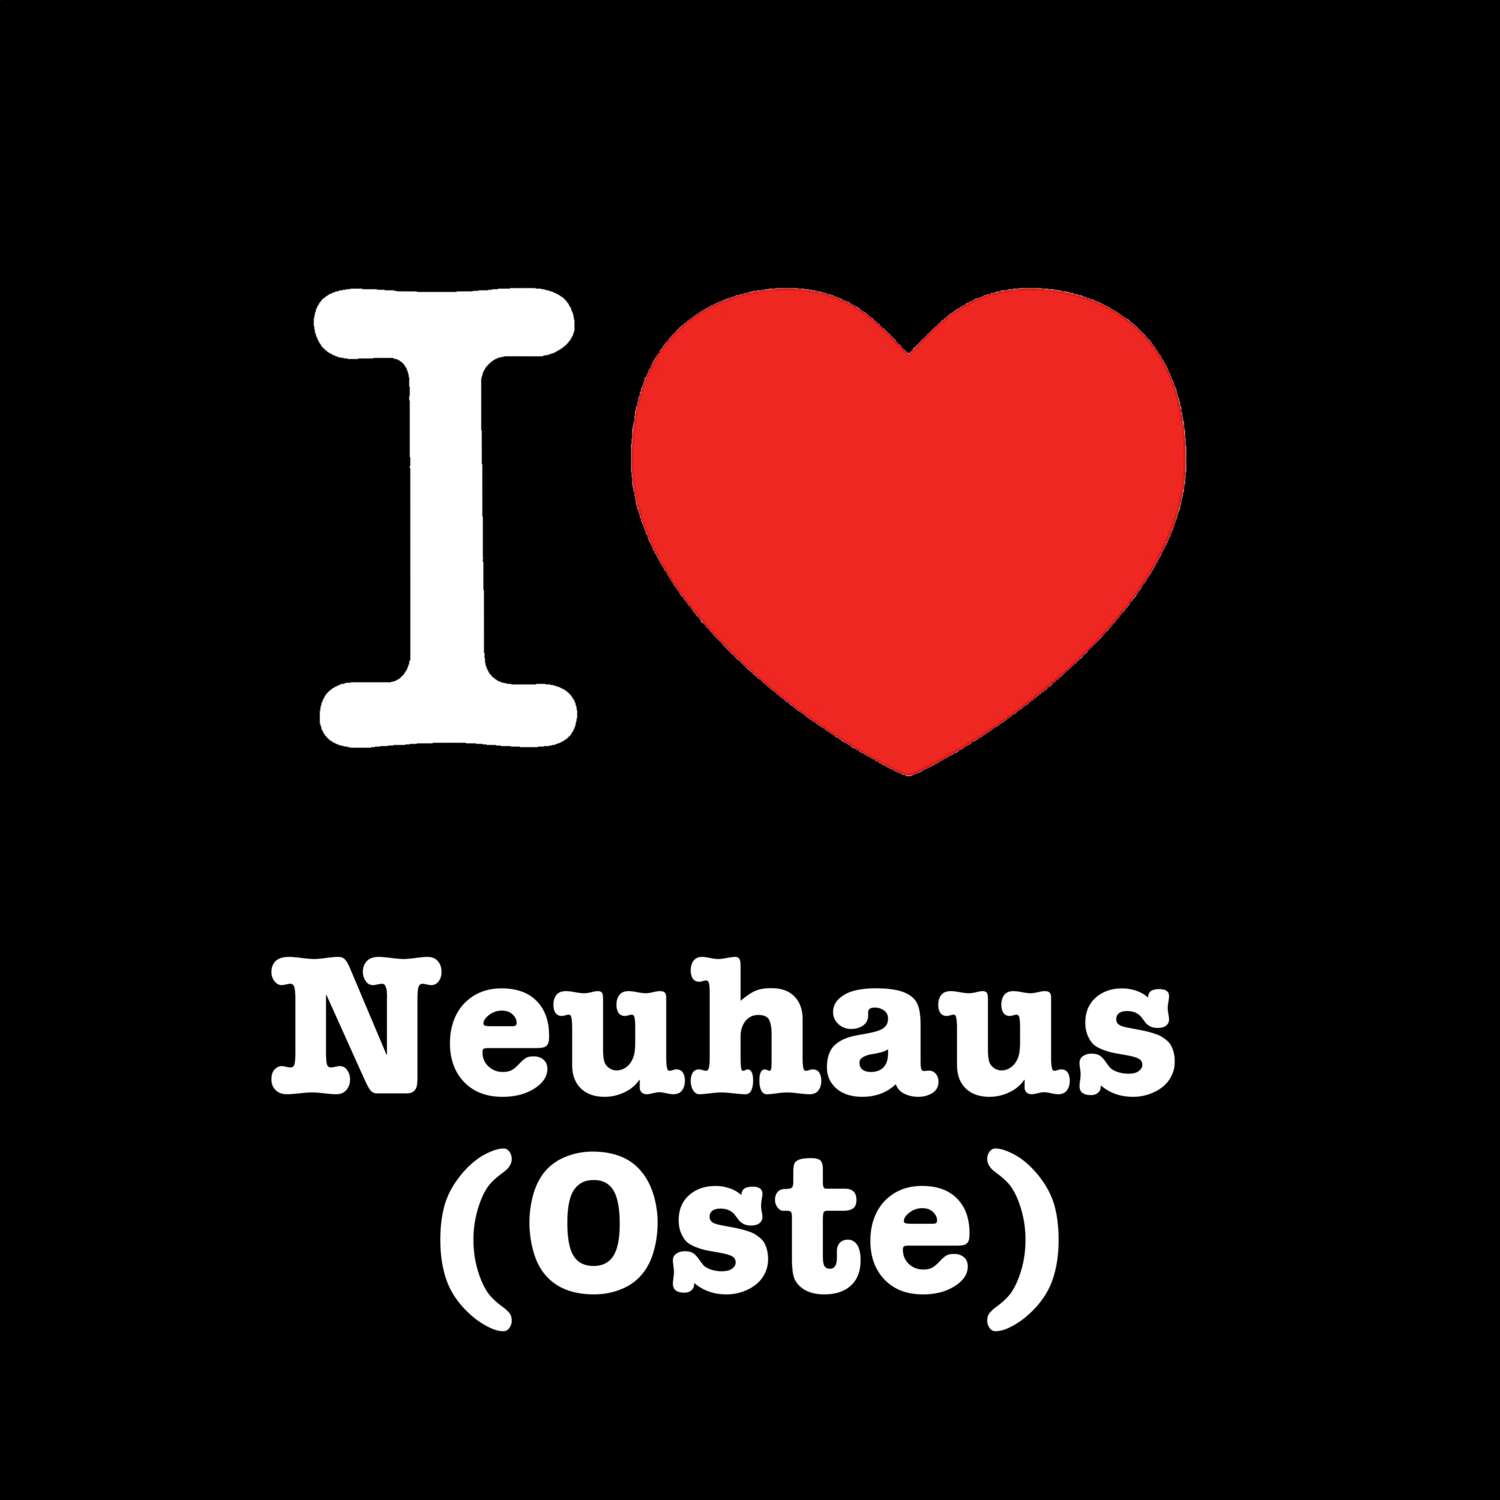 Neuhaus (Oste) T-Shirt »I love«